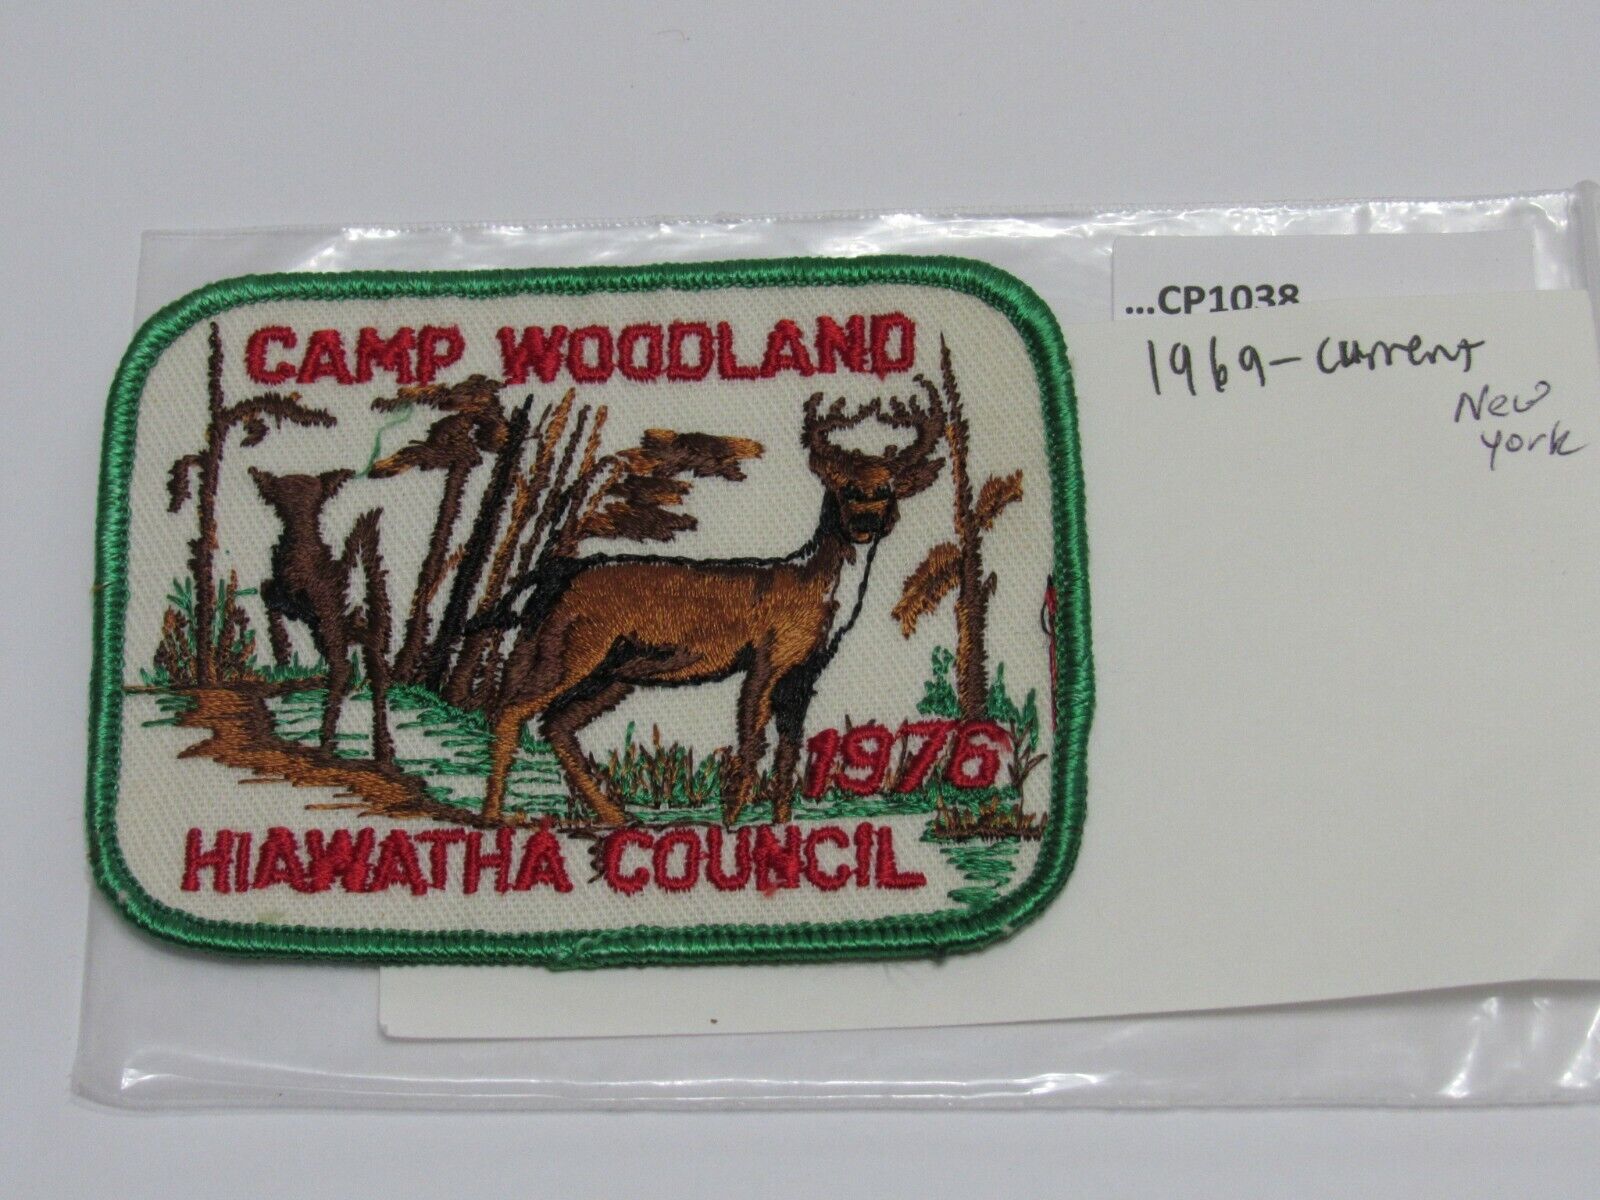 CAMP WOODLAND 1976 HIAWATHA COUNCIL 1969 - CURRENT N.Y. CP1038